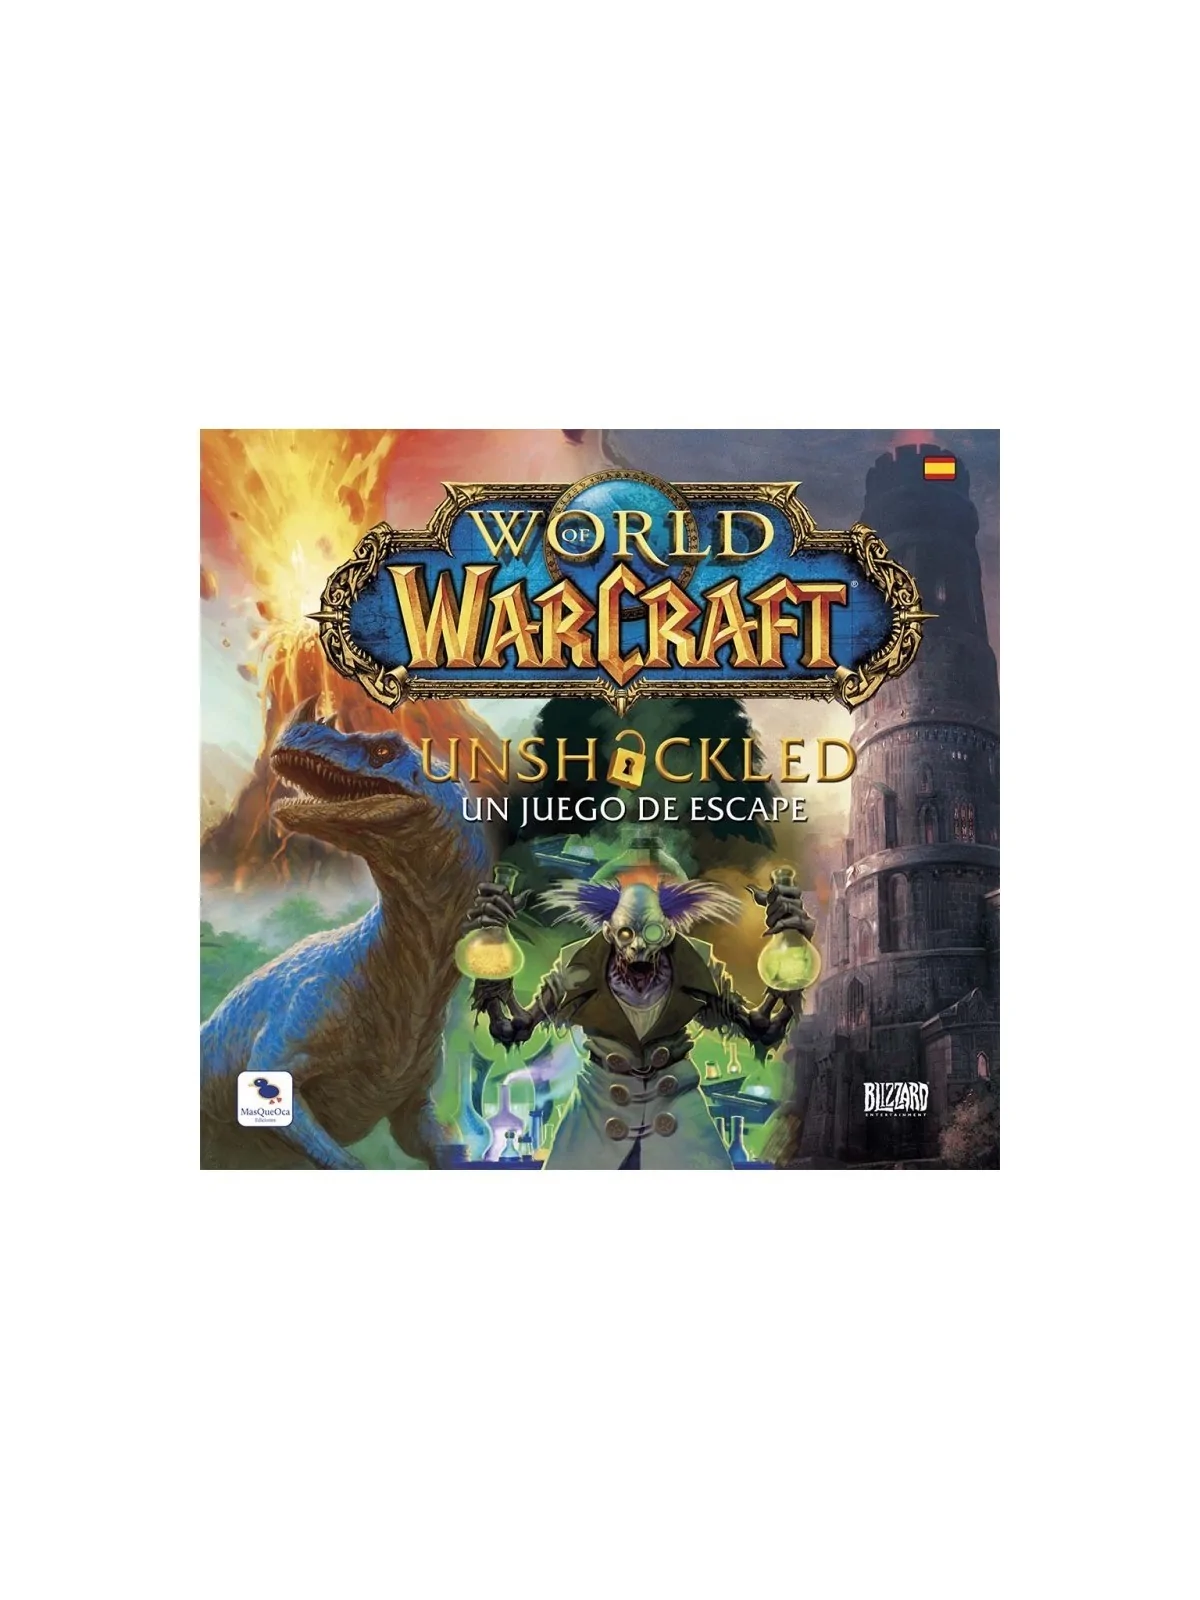 Comprar World of Warcraft Unshackled barato al mejor precio 23,99 € de